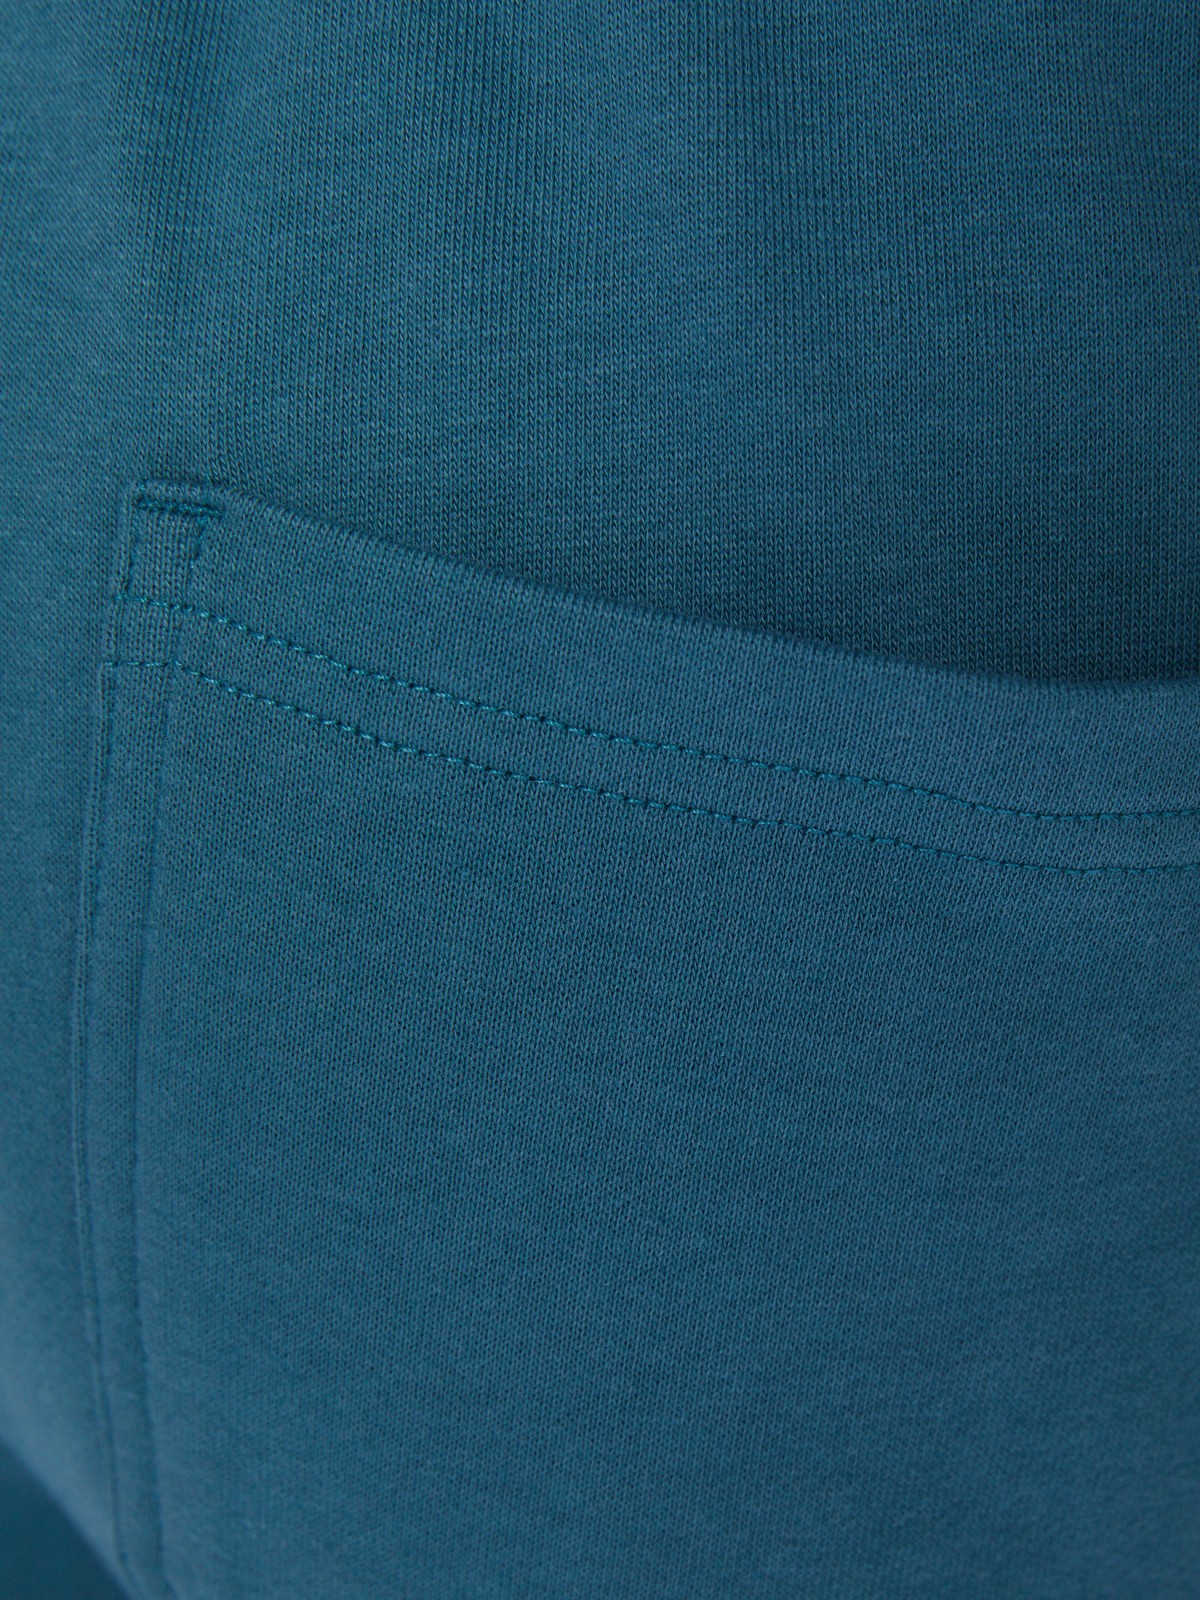 Трикотажные брюки-джоггеры в спортивном стиле zolla 014217675012, цвет бирюзовый, размер S - фото 6